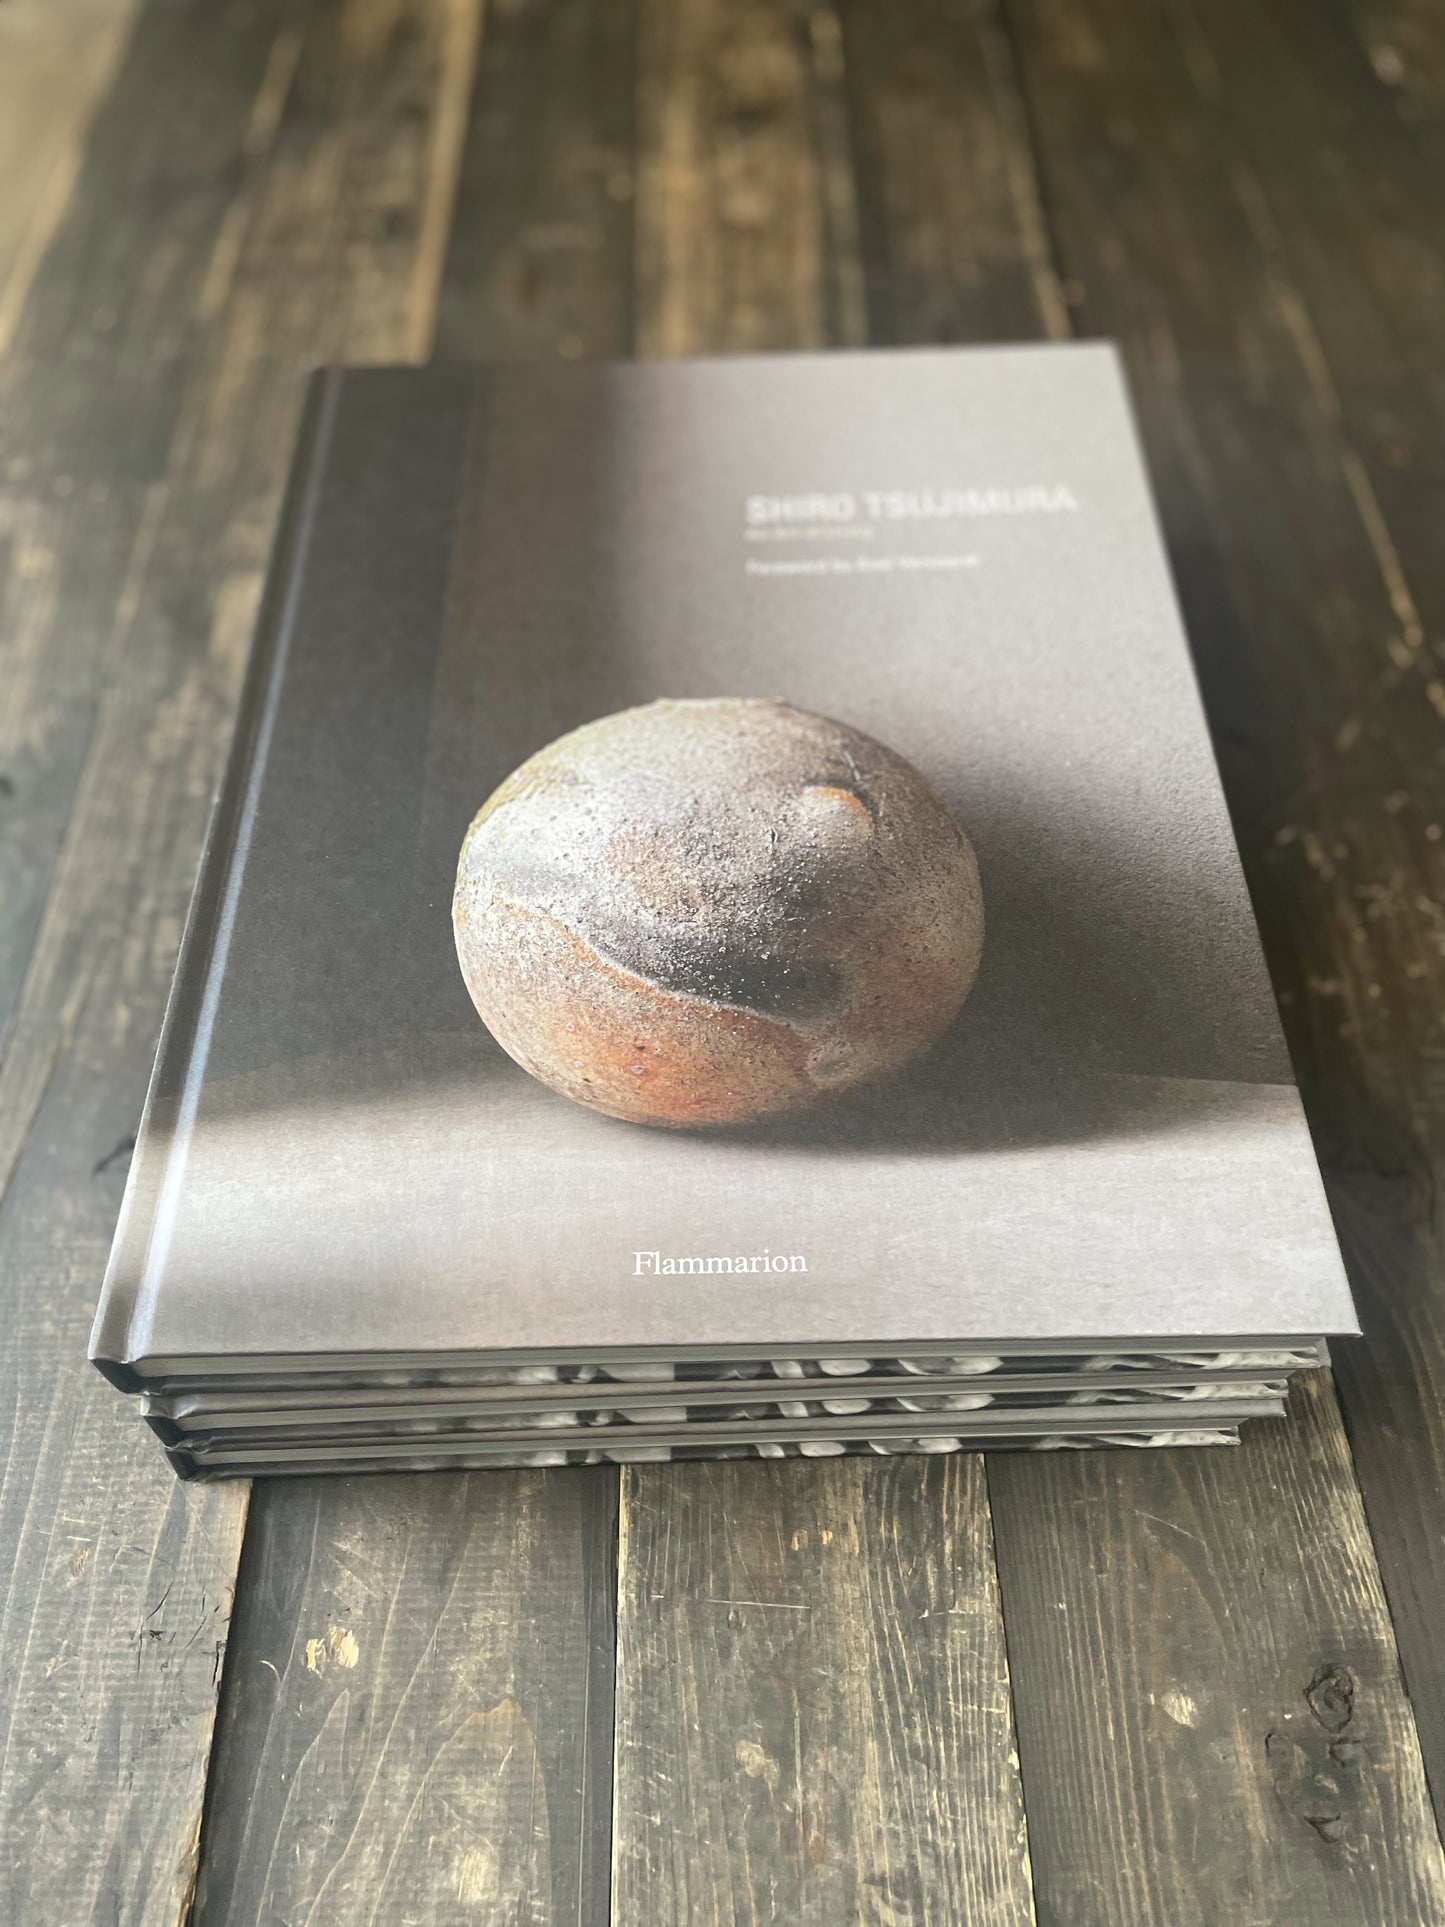 [Catalogue] Shiro Tsujimura: An Art of Living